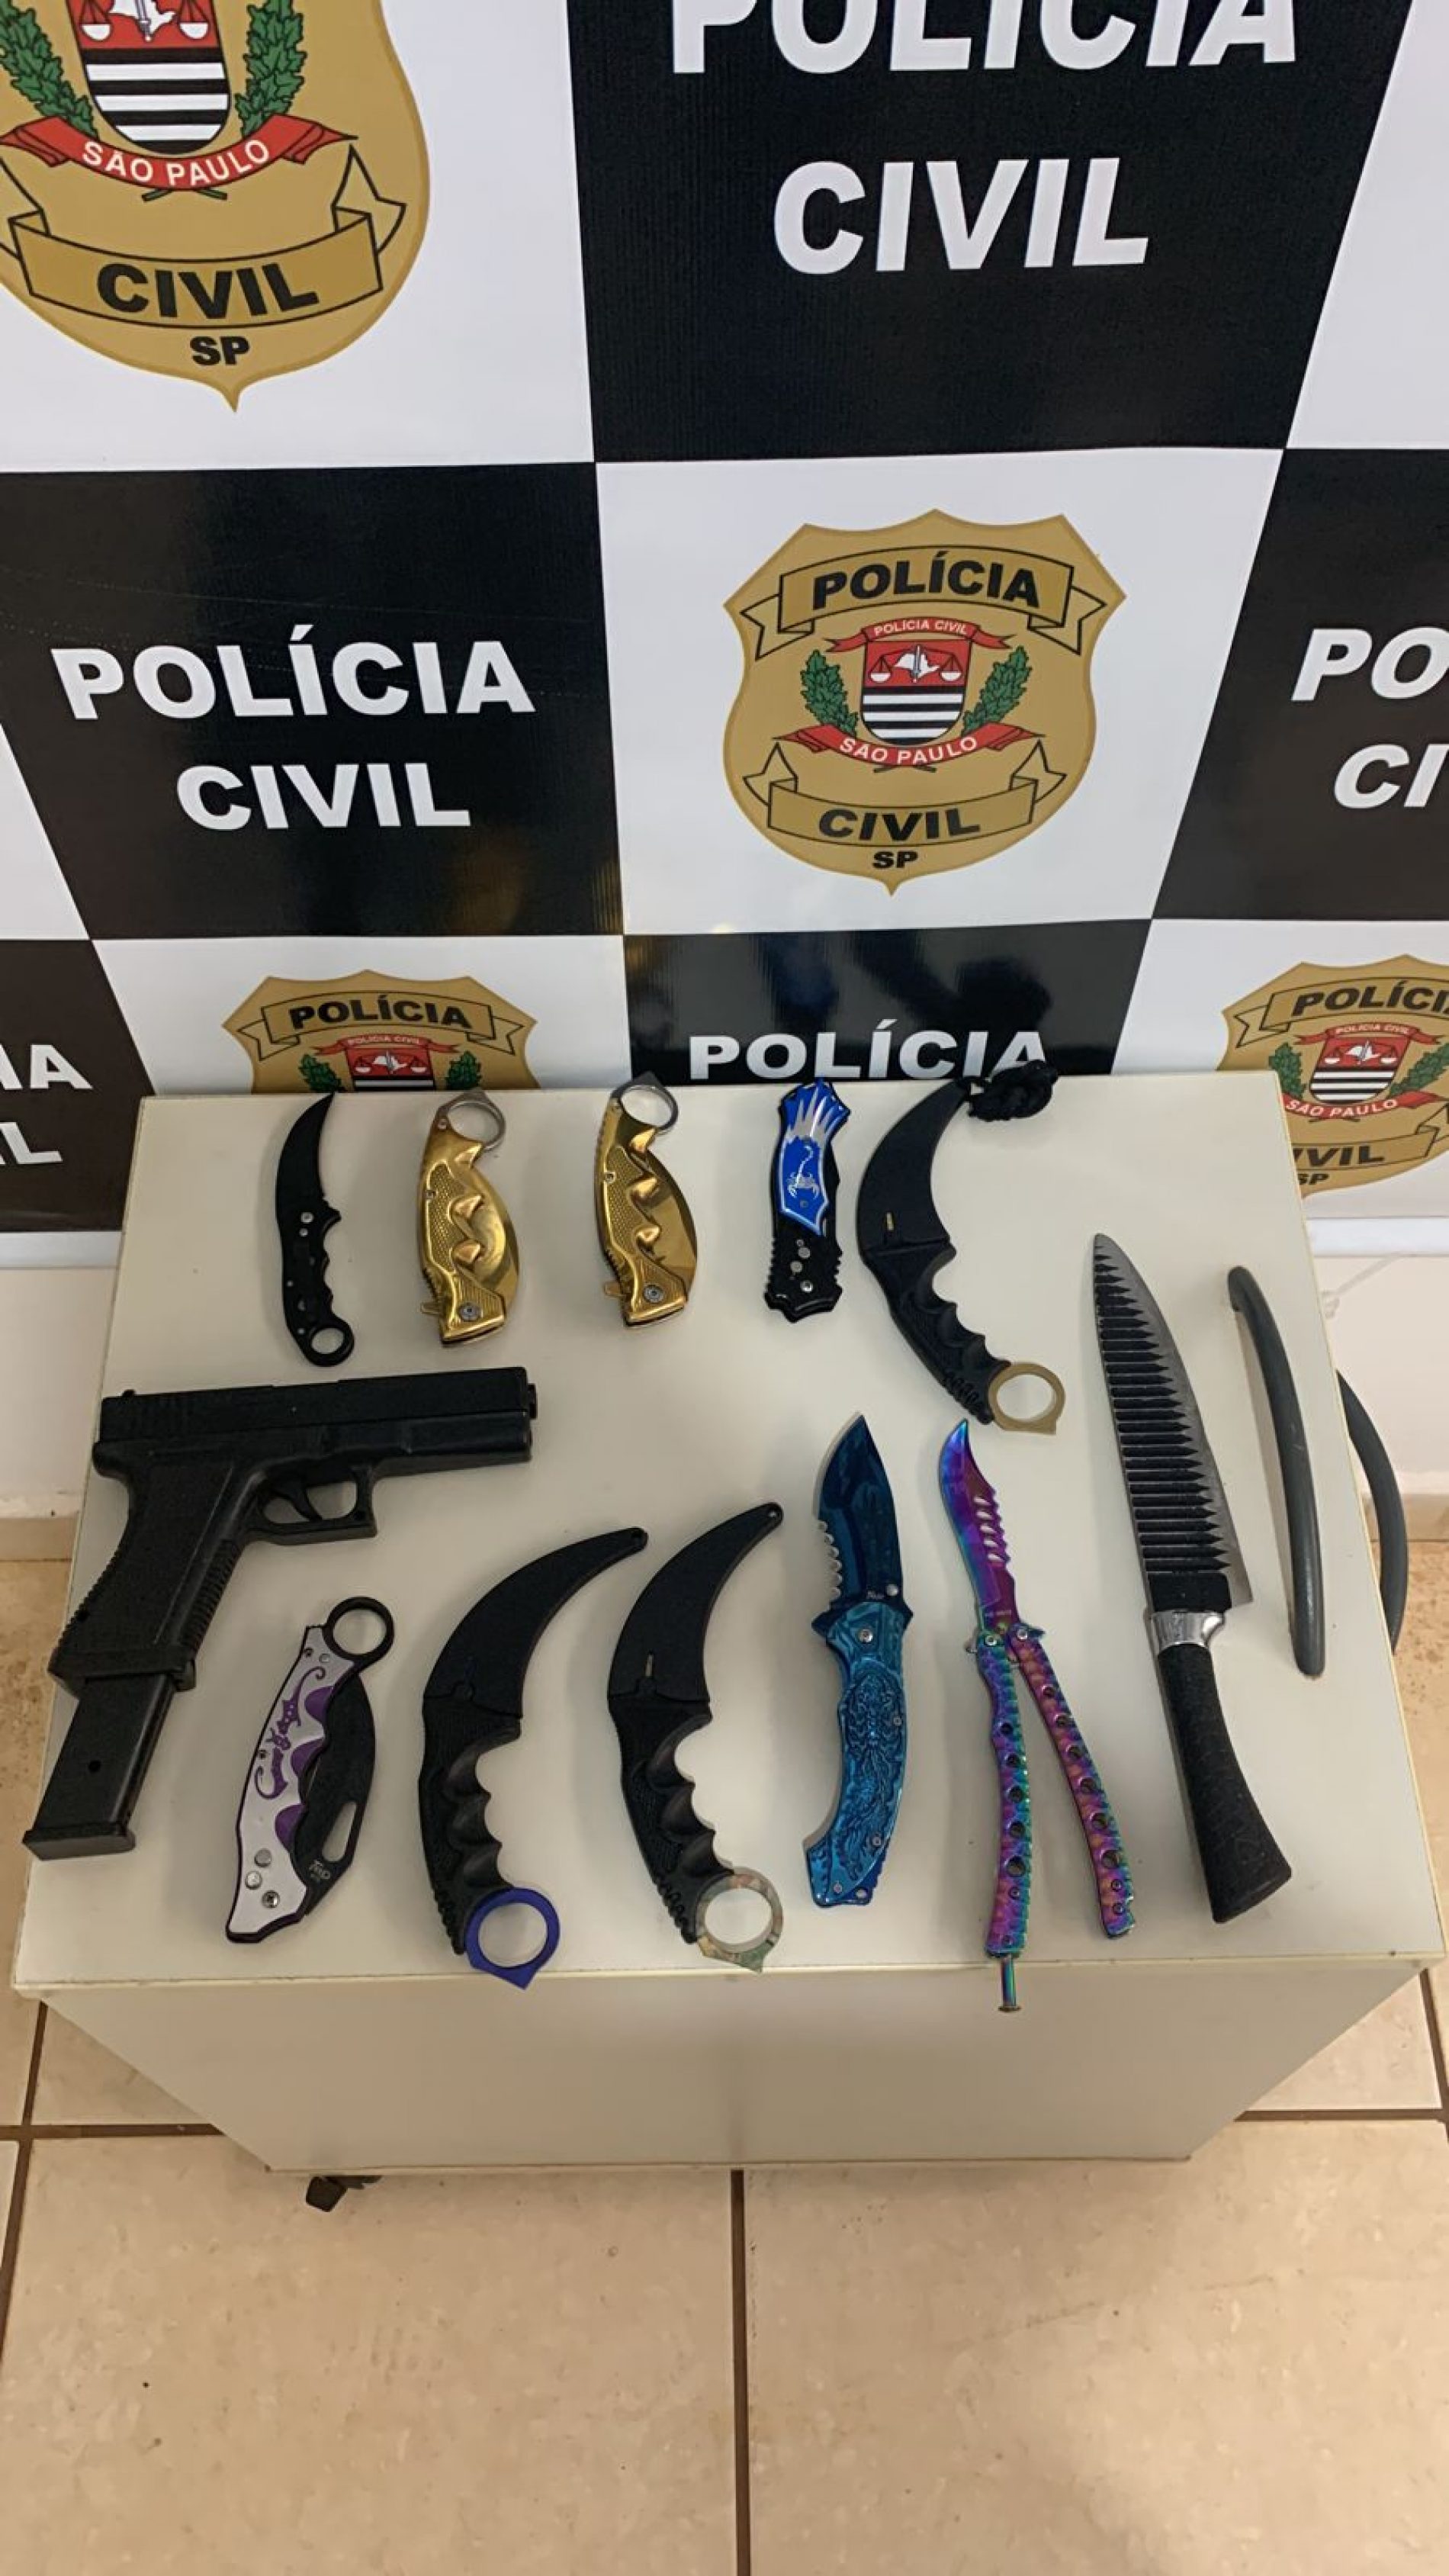 Policia Civil de Colina apreende facas em residências de dois adolescentes em investigação sobre ameaças de ataques a escola